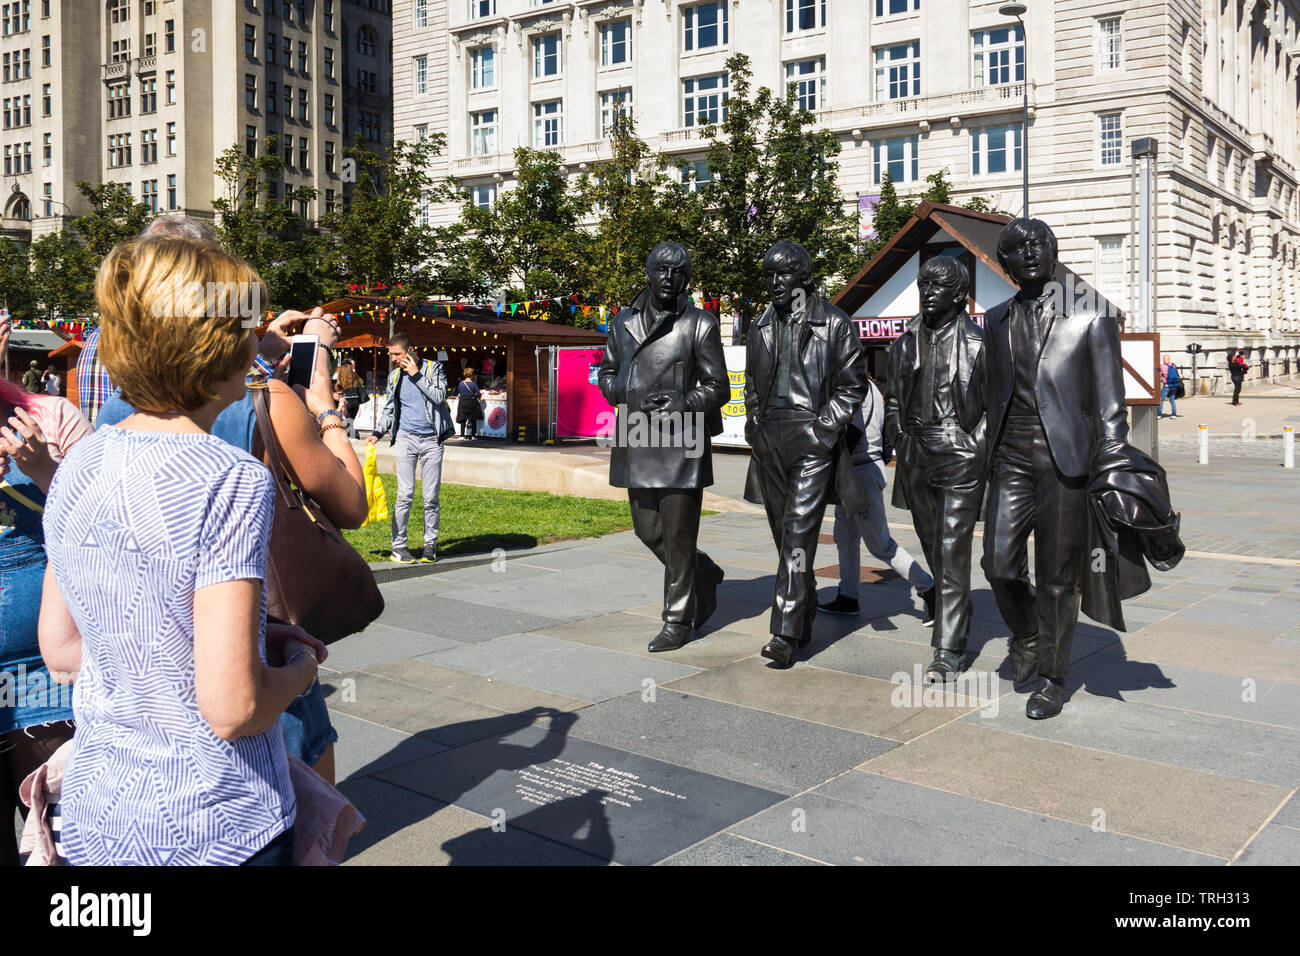 Los turistas viendo la estatua de los Beatles en Liverpool's Pier Head. La estatua fue descubierta en diciembre de 2015 y fue un regalo a la ciudad por el Cavern Club. Foto de stock